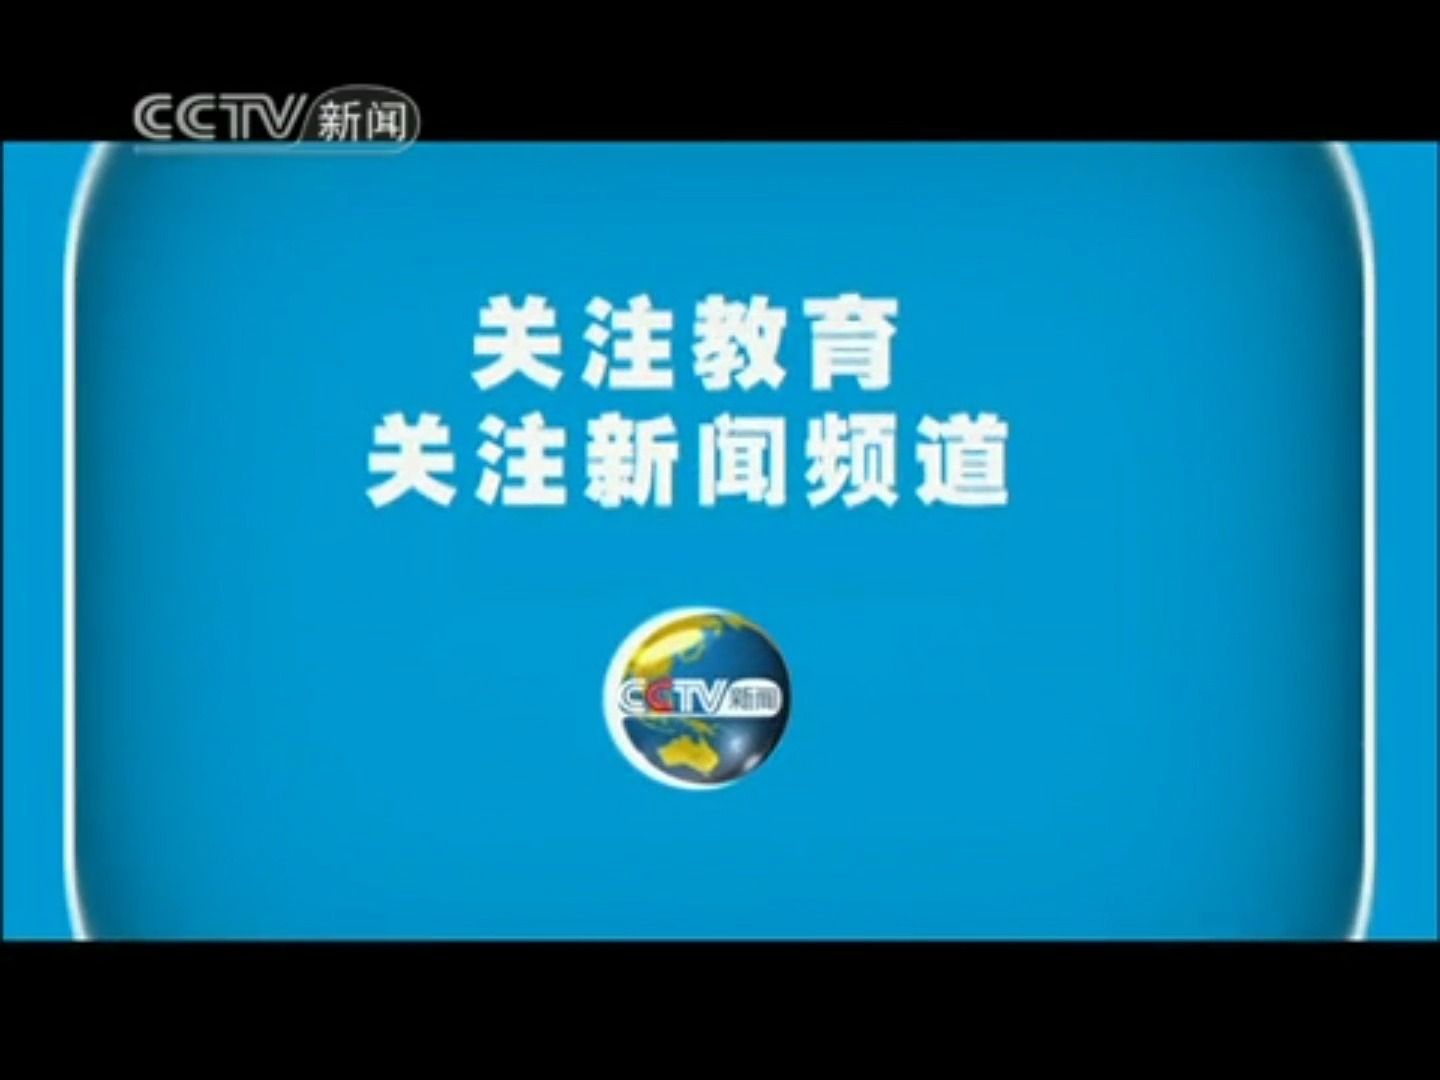 【广播电视】CCTV-新闻 11:00《新闻直播间》新闻一则+ED+结束后广告+节目预告+天气预报（2010.7.30）